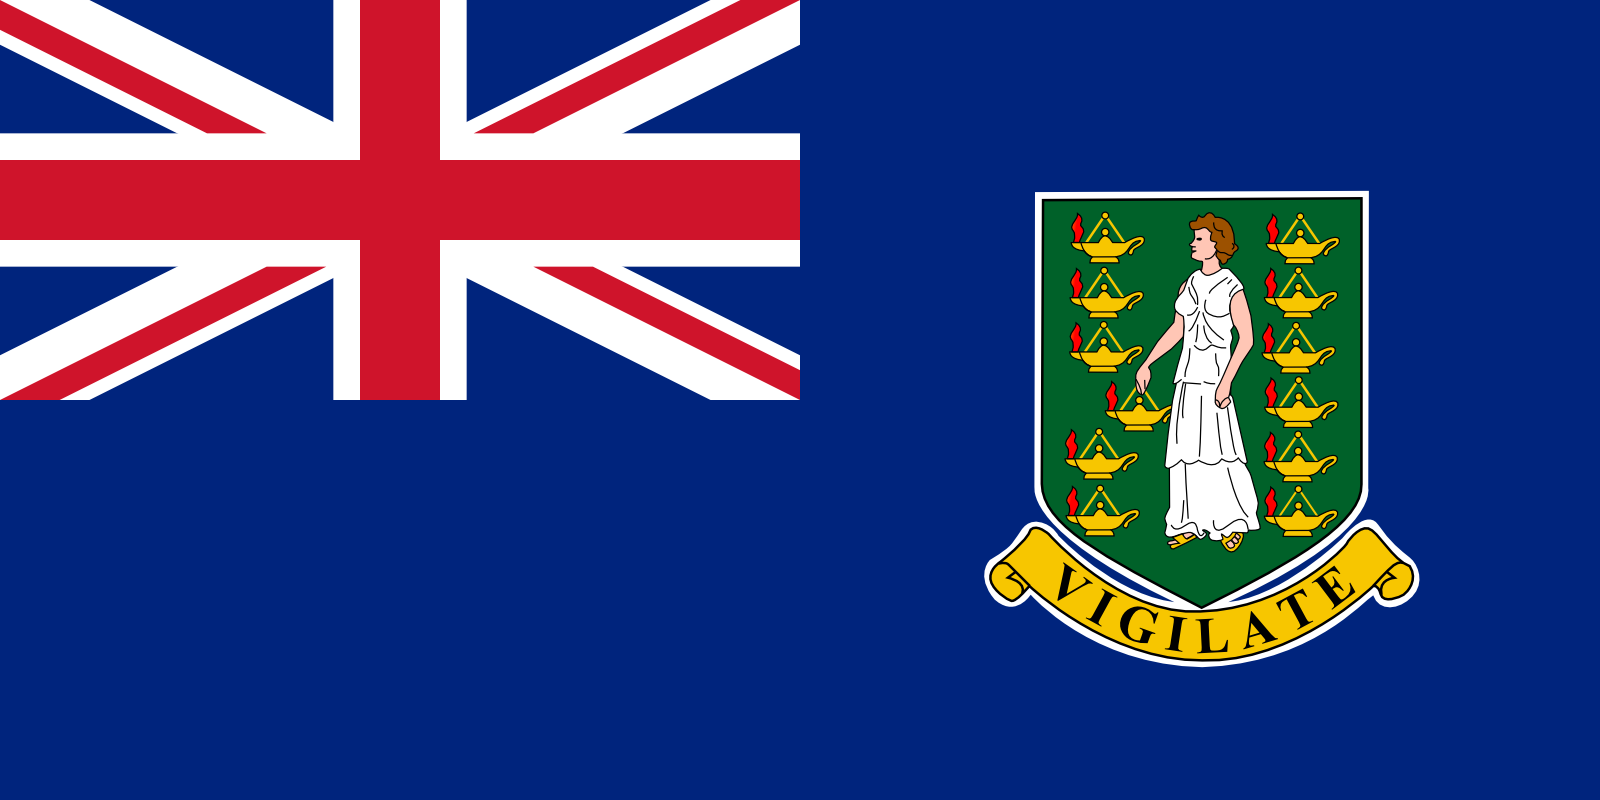 Bild der Staatsflagge Britische Jungferninseln - mit einer Auflösung von 1600x800 - Mittelamerika